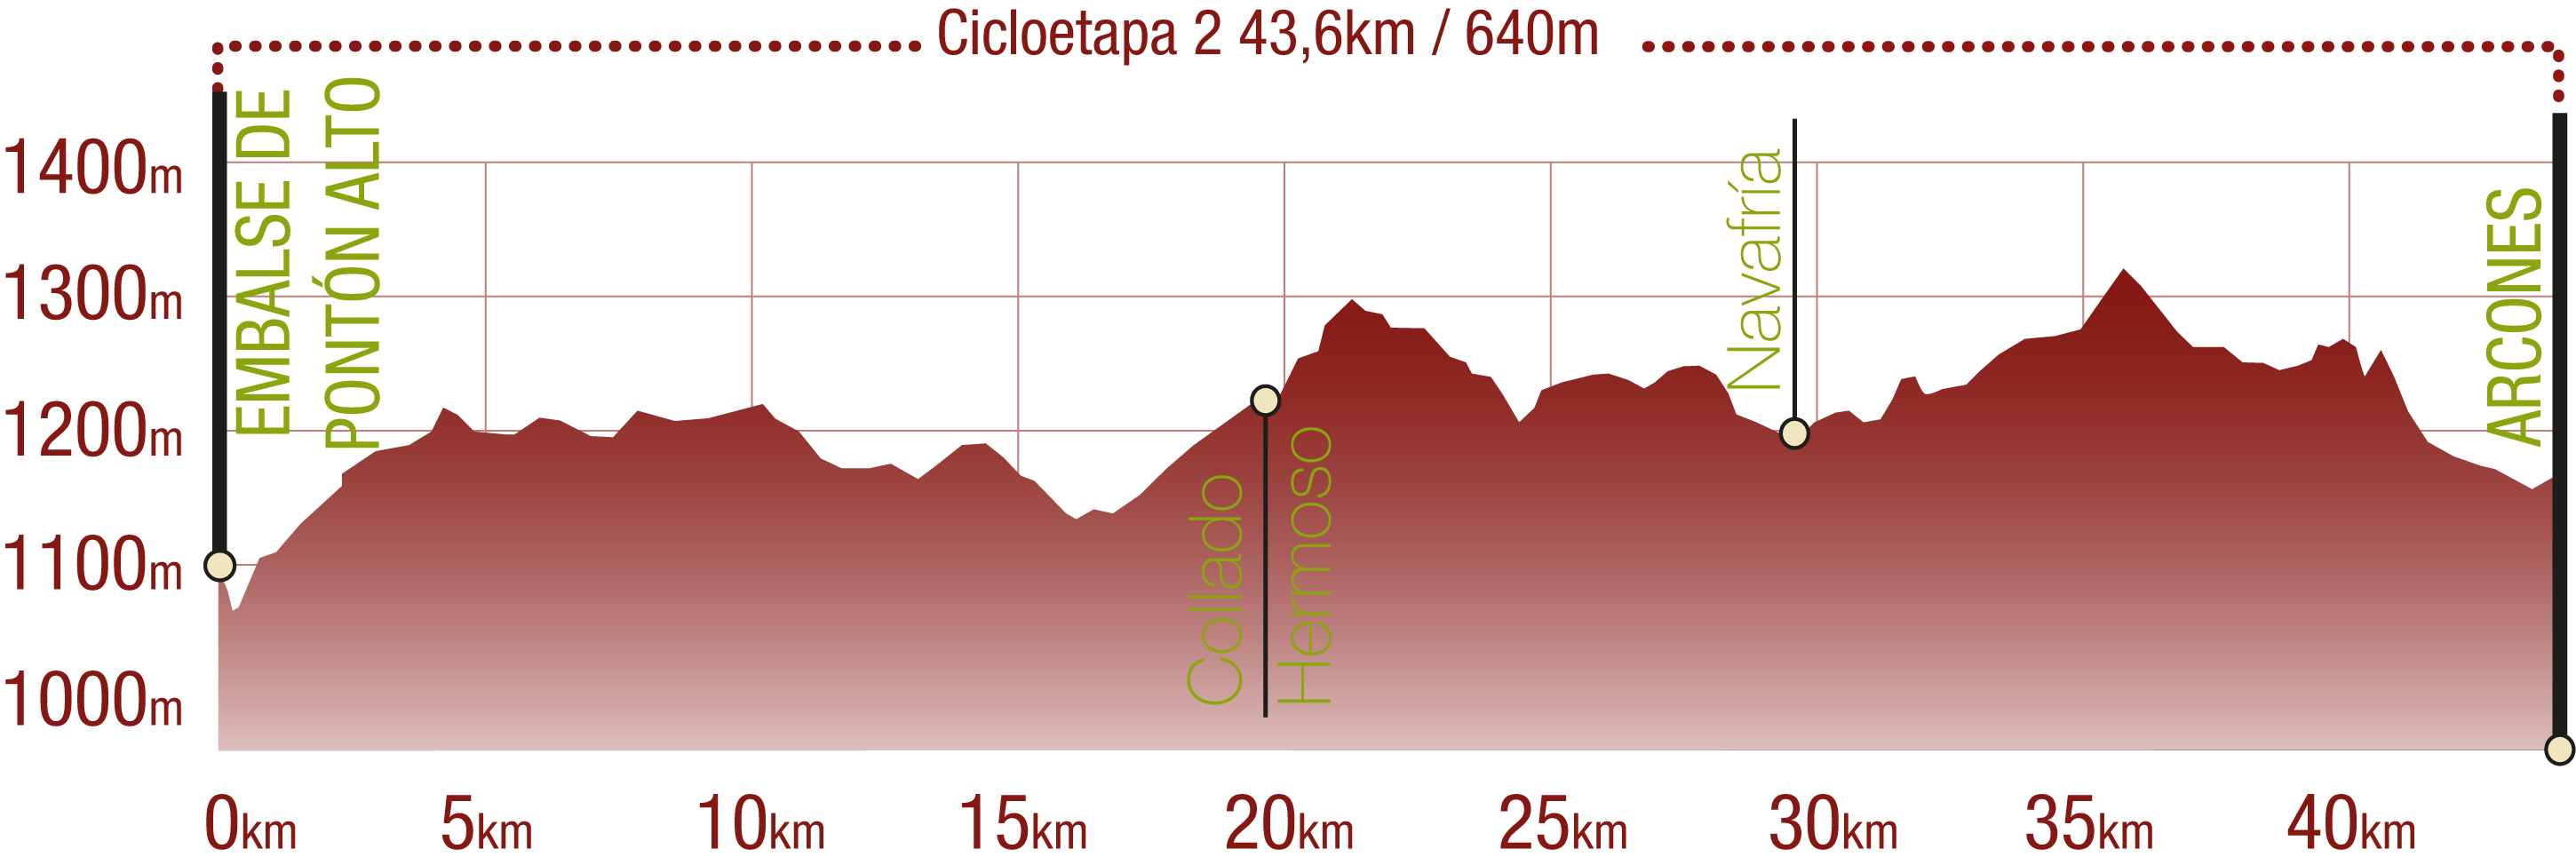 Perfil 
Perfil de la Cicloetapa 2 del CN de la Cañada Real Soriana Occidental: 43,6 km / Desnivel de subida 640 m

